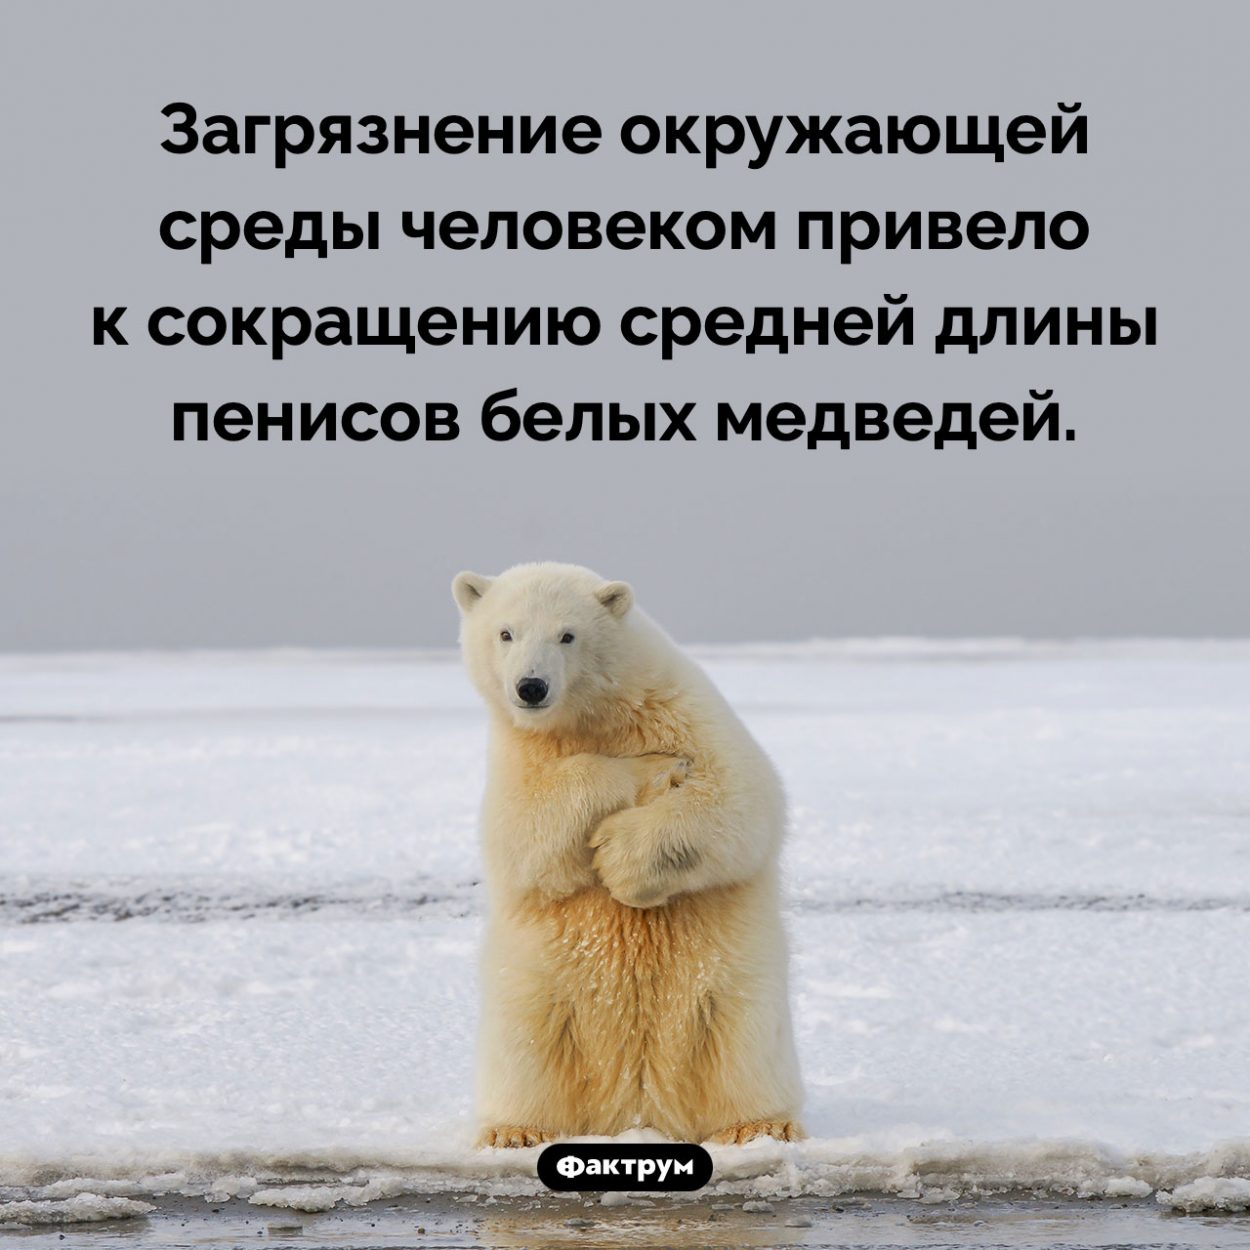 Экология и пенисы полярных медведей. Загрязнение окружающей среды человеком привело к сокращению средней длины пенисов белых медведей.